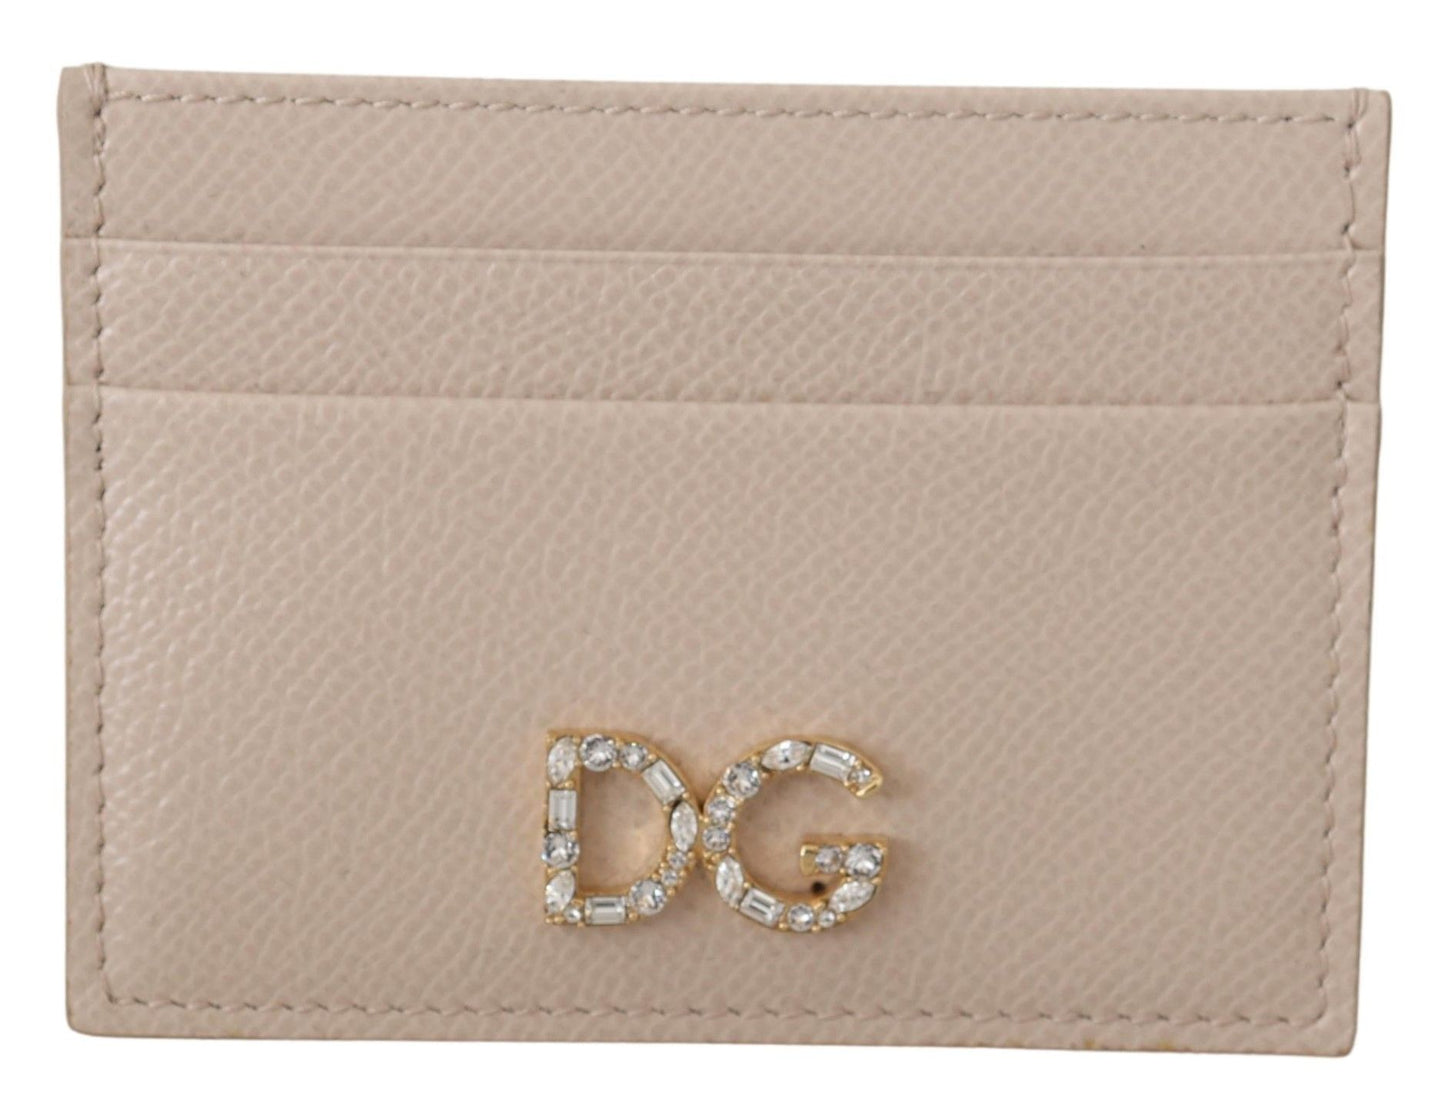 Beige Dauphine Leather Jewel DG Logo Wallet